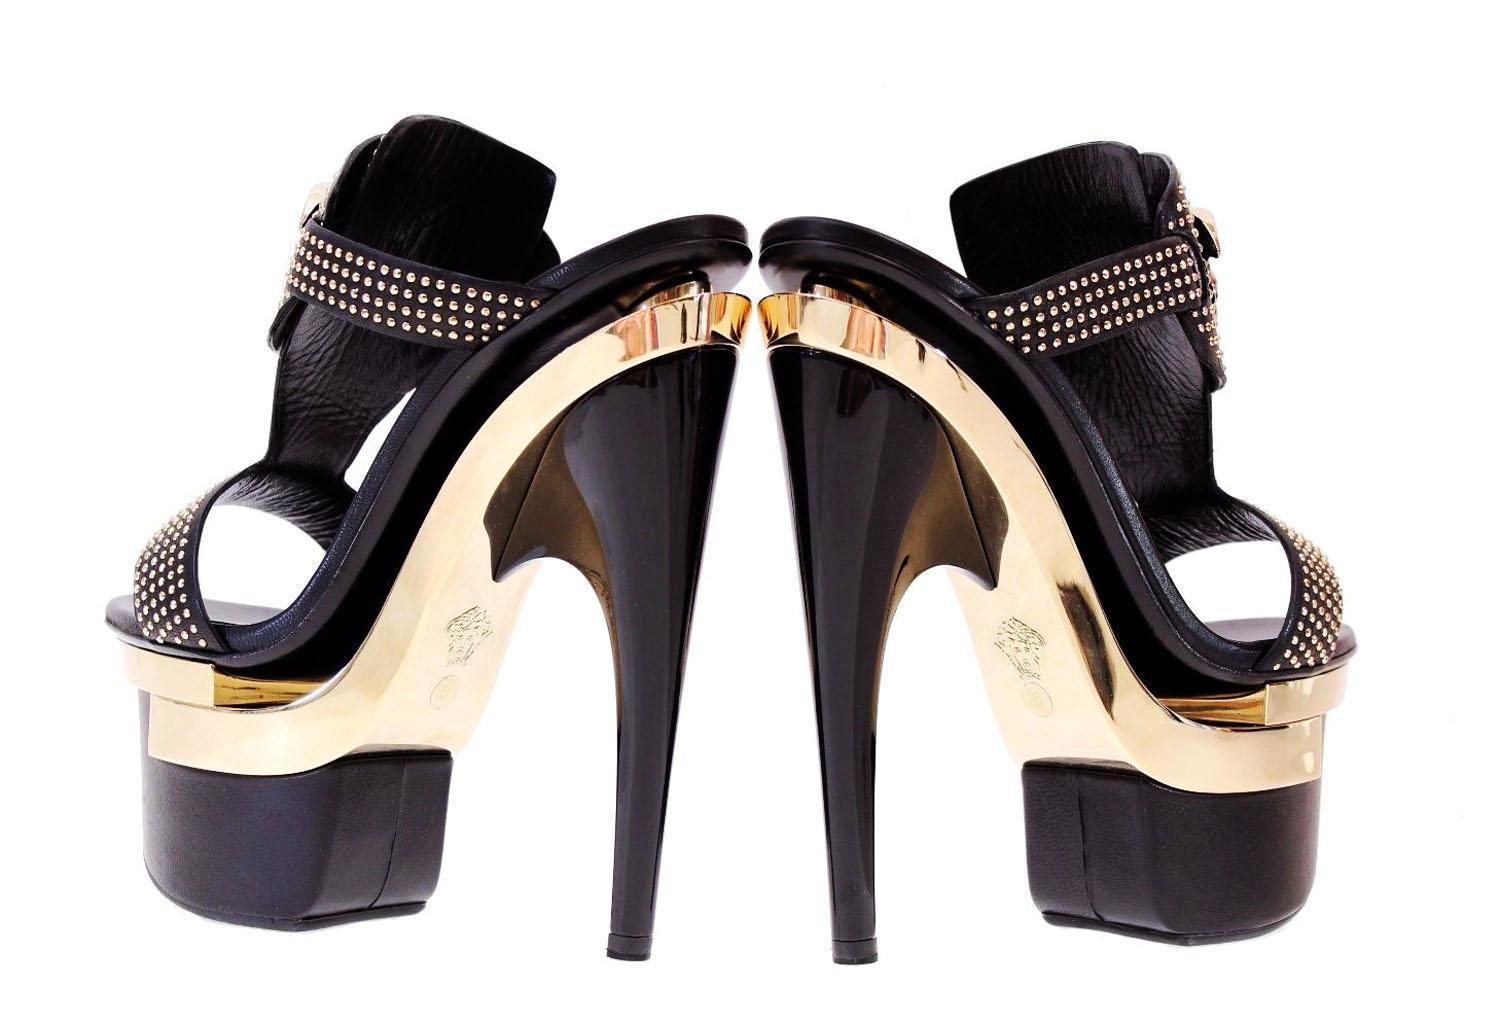 &New Versace Dreifach-Plattform Nieten-Sandalen Schuhe
Italienische Größe - 40 ( US 10)
Schwarze Ledersandalen mit goldfarbener Medusa und Metallnieten. 
Absatzhöhe - 7 Zoll ( 18 CM ) , Plateau aus goldfarbenem Metall und schwarzem Leder - 3 Zoll (